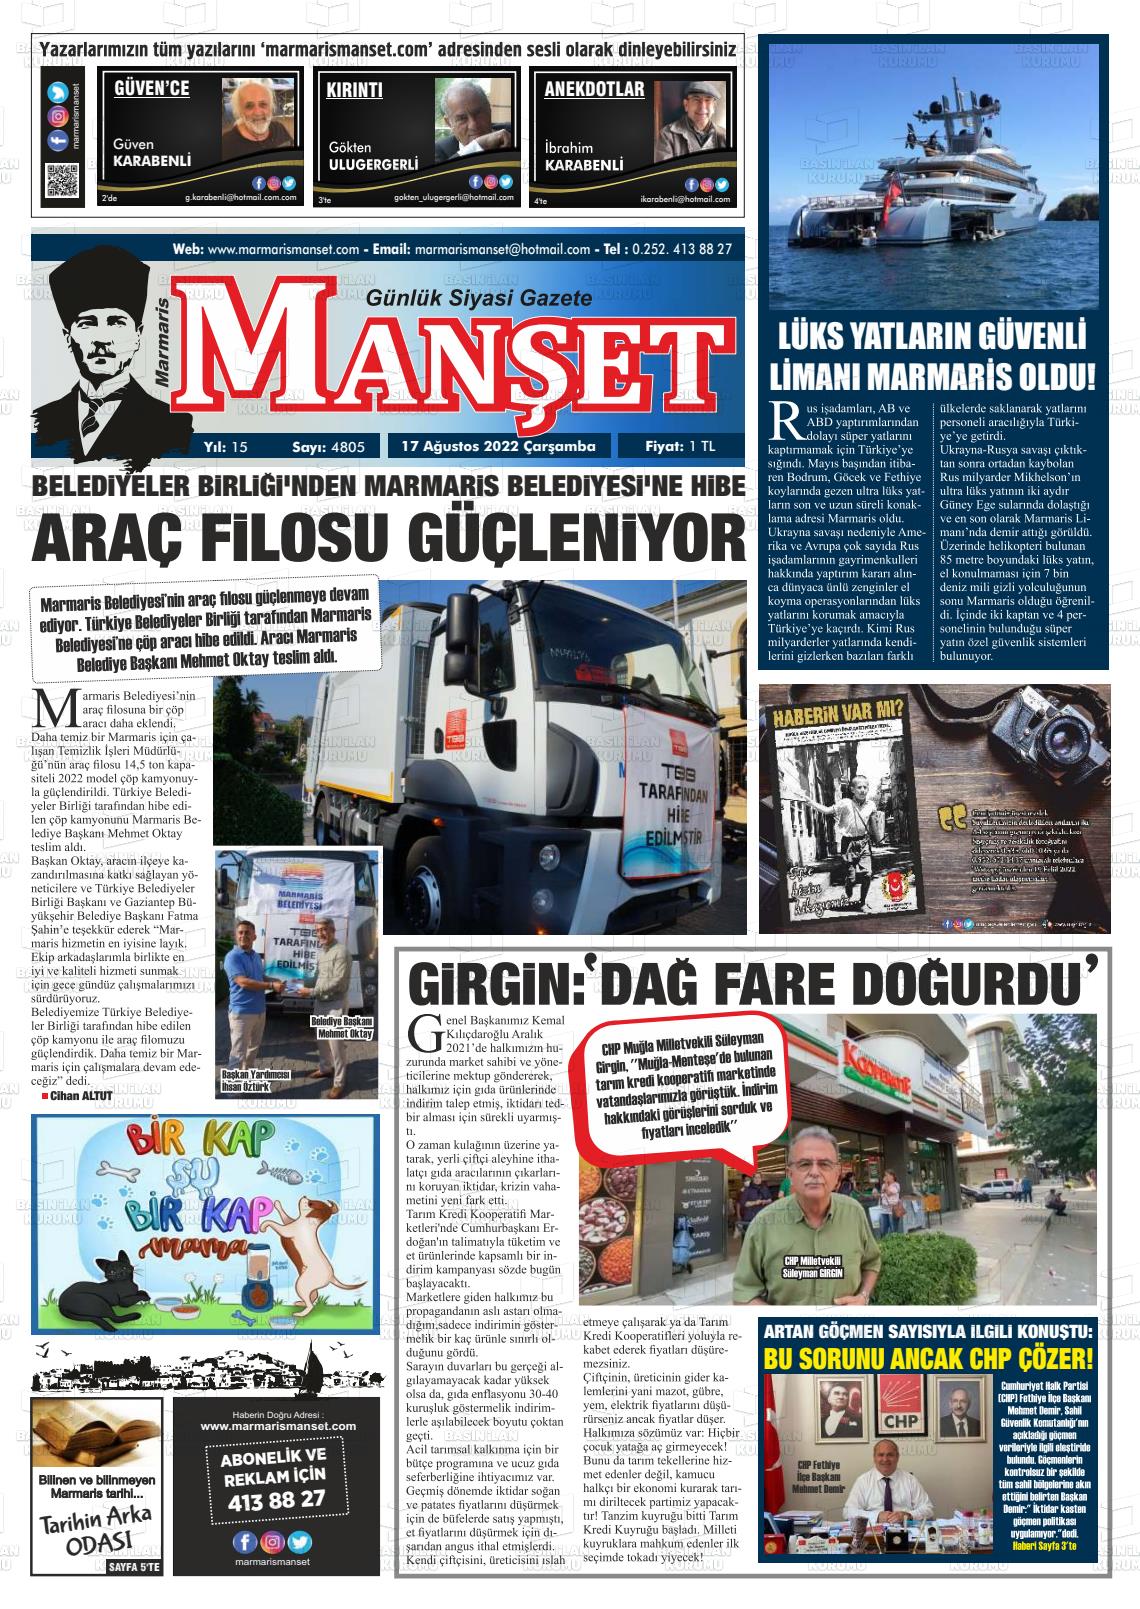 17 Ağustos 2022 Marmaris Manşet Gazete Manşeti